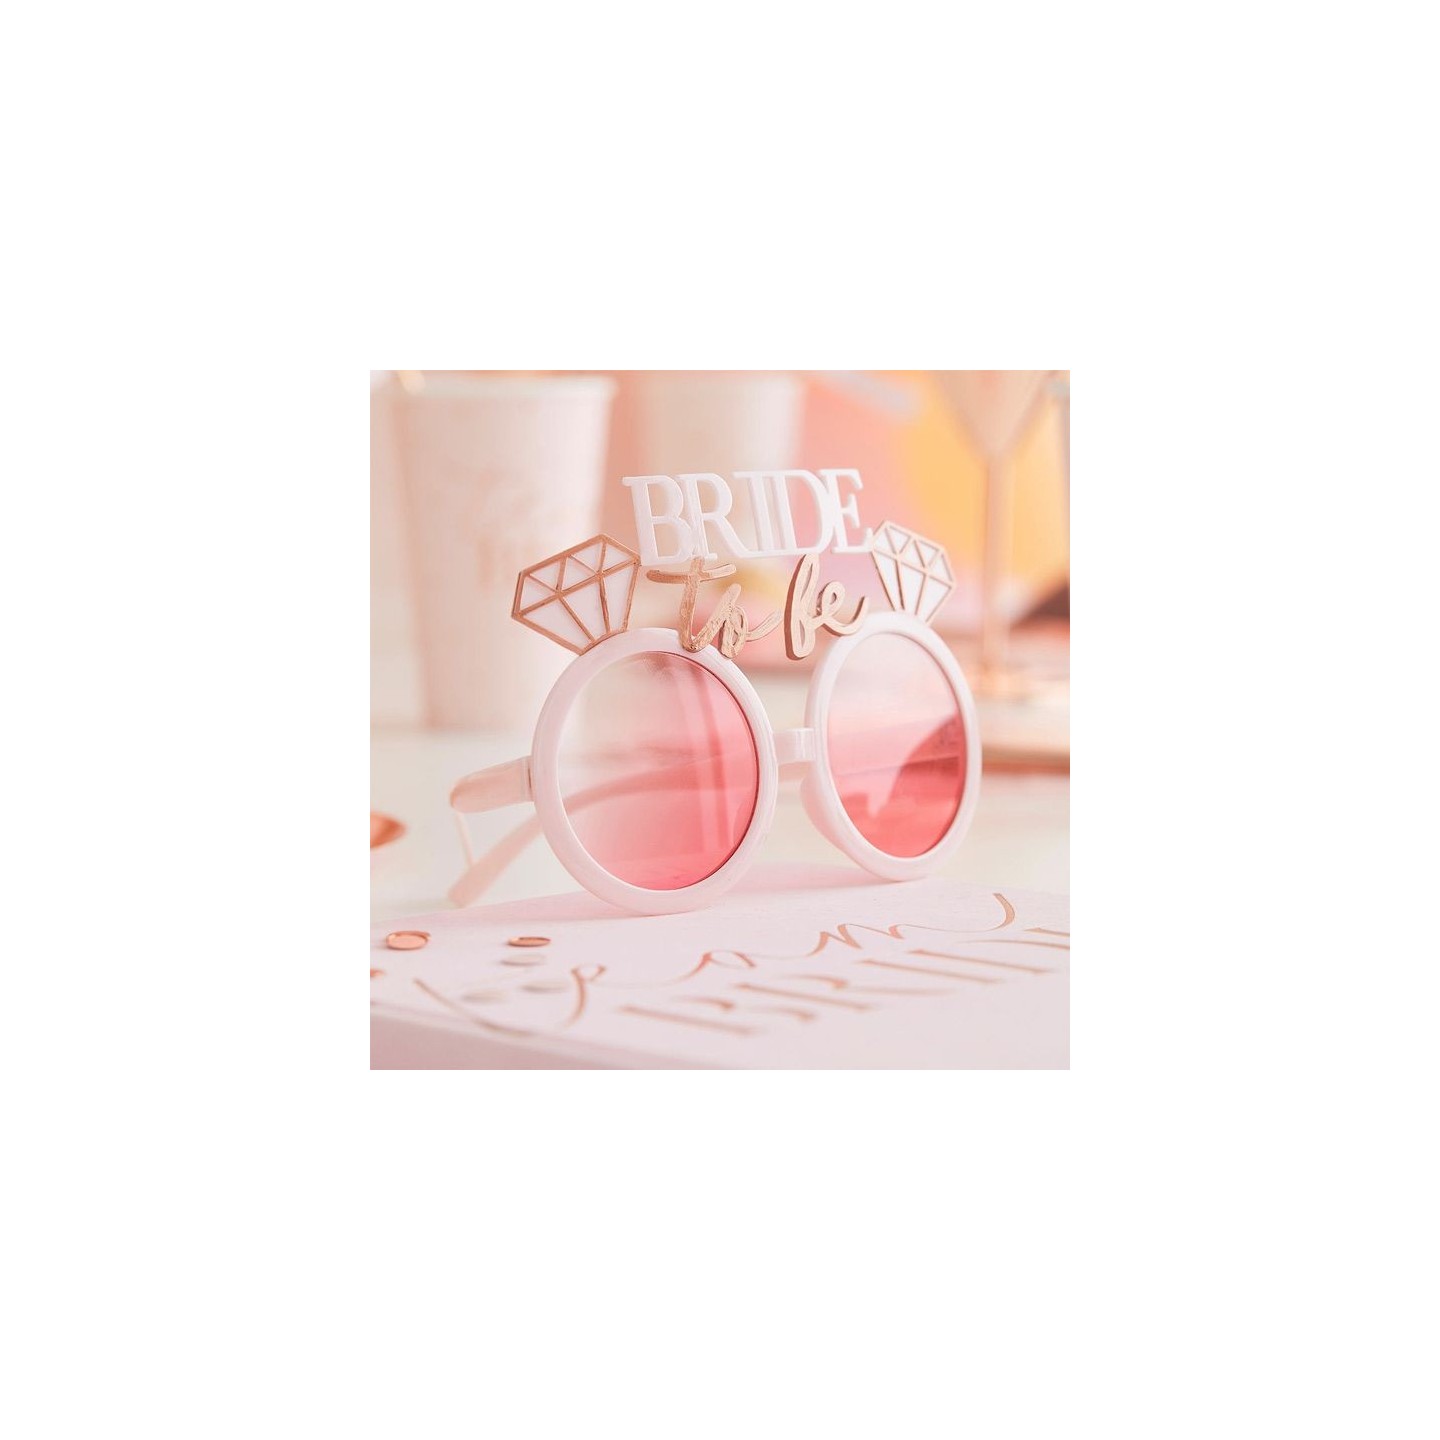 vrijgezellen accessoires "Bride to be" bril roze